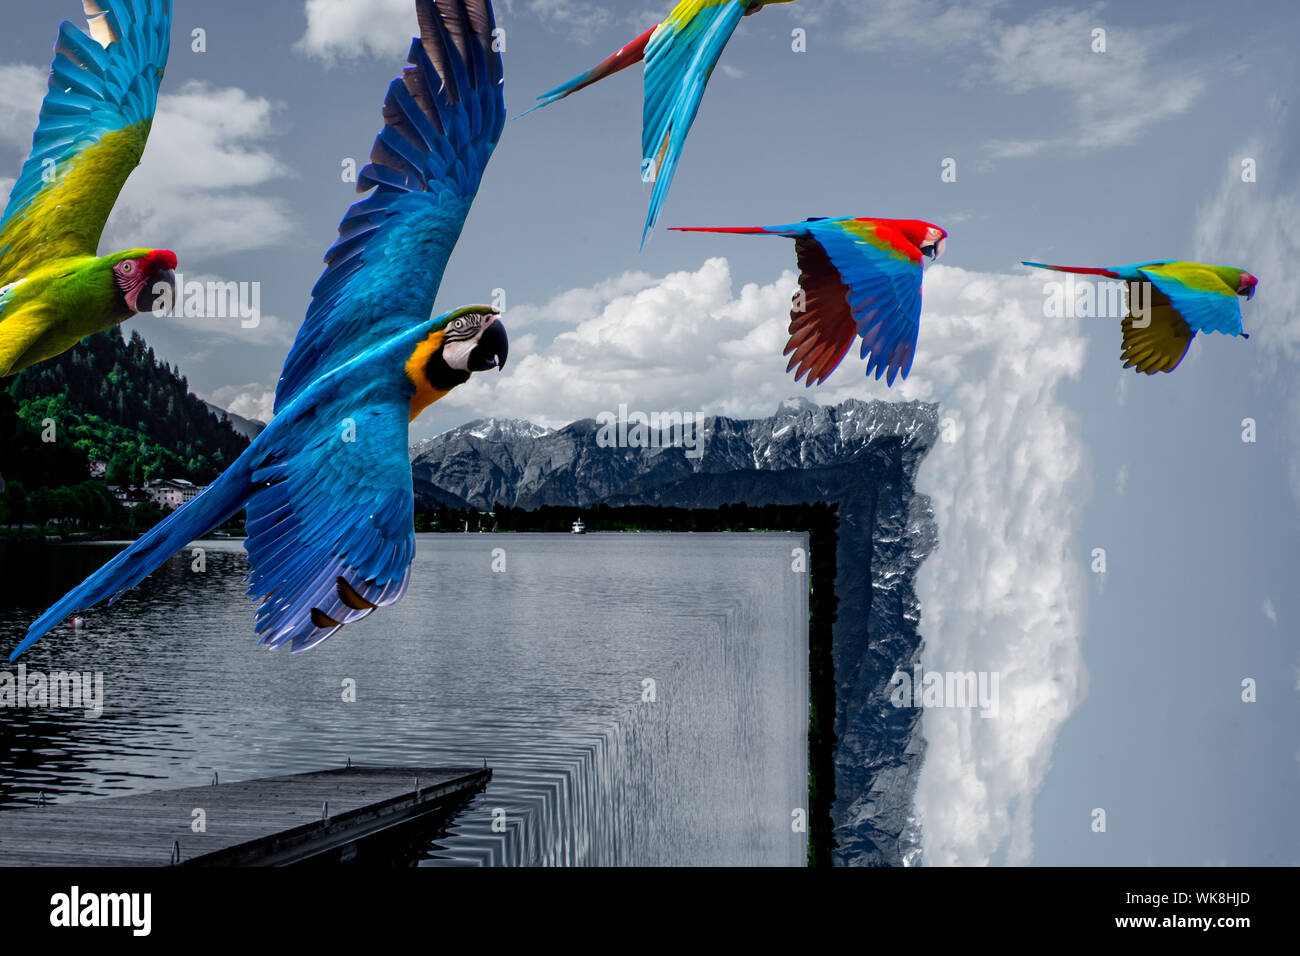 Composito di pappagalli (ARA) volare sopra piazza lago con rampa in barca alla ricerca nella fotocamera in una giornata di sole. Foto Stock